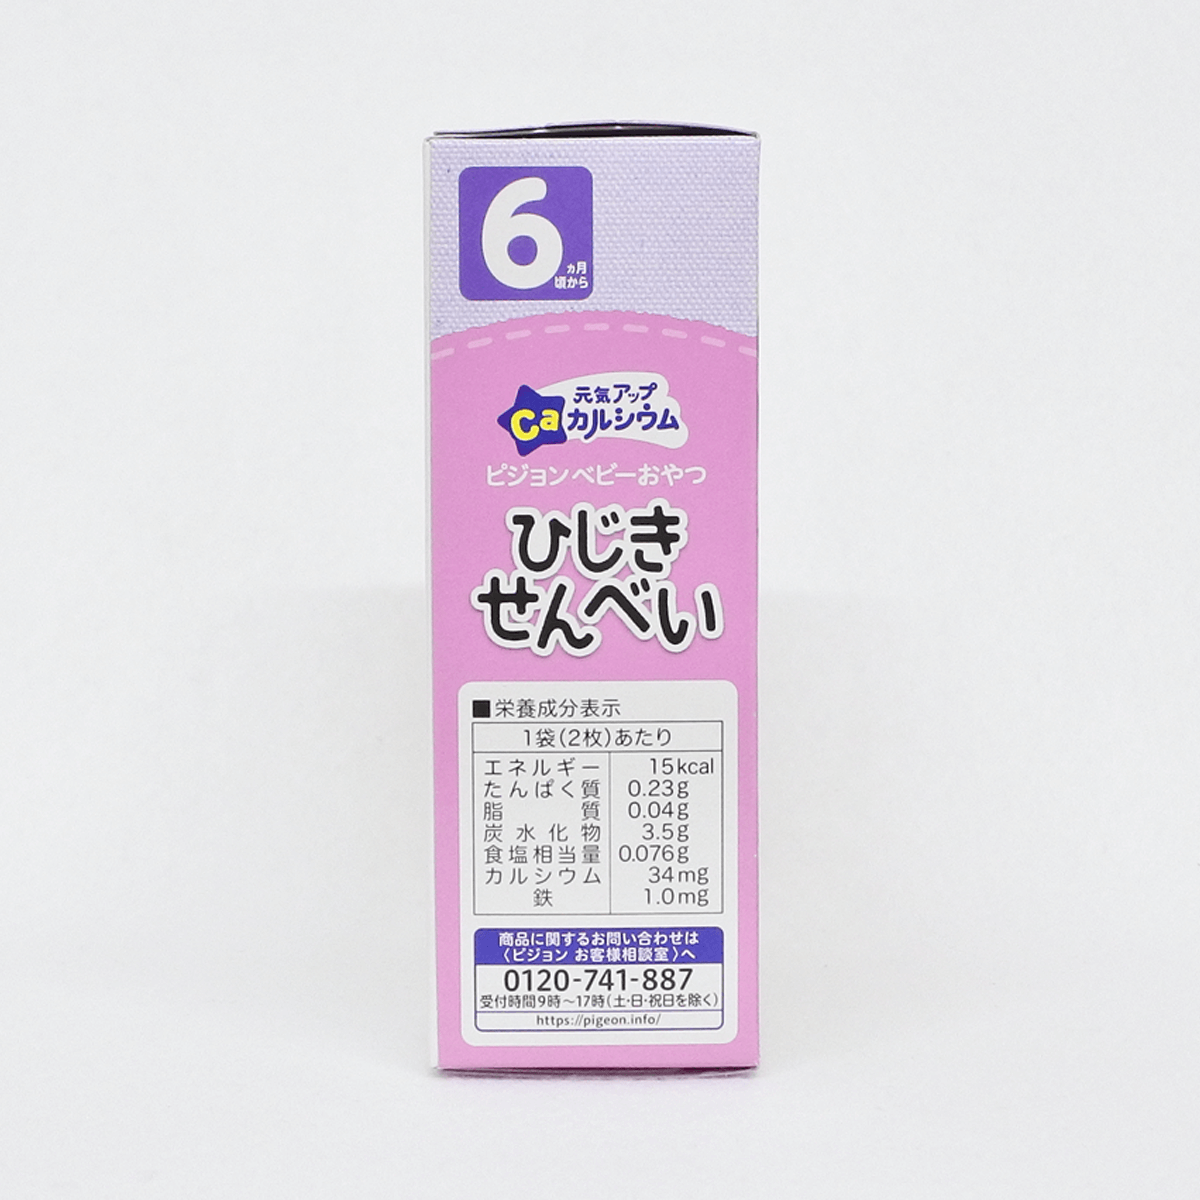 贝亲 Pigeon 含钙羊栖菜仙贝 婴儿饼干(6个月以上) 2片×6袋